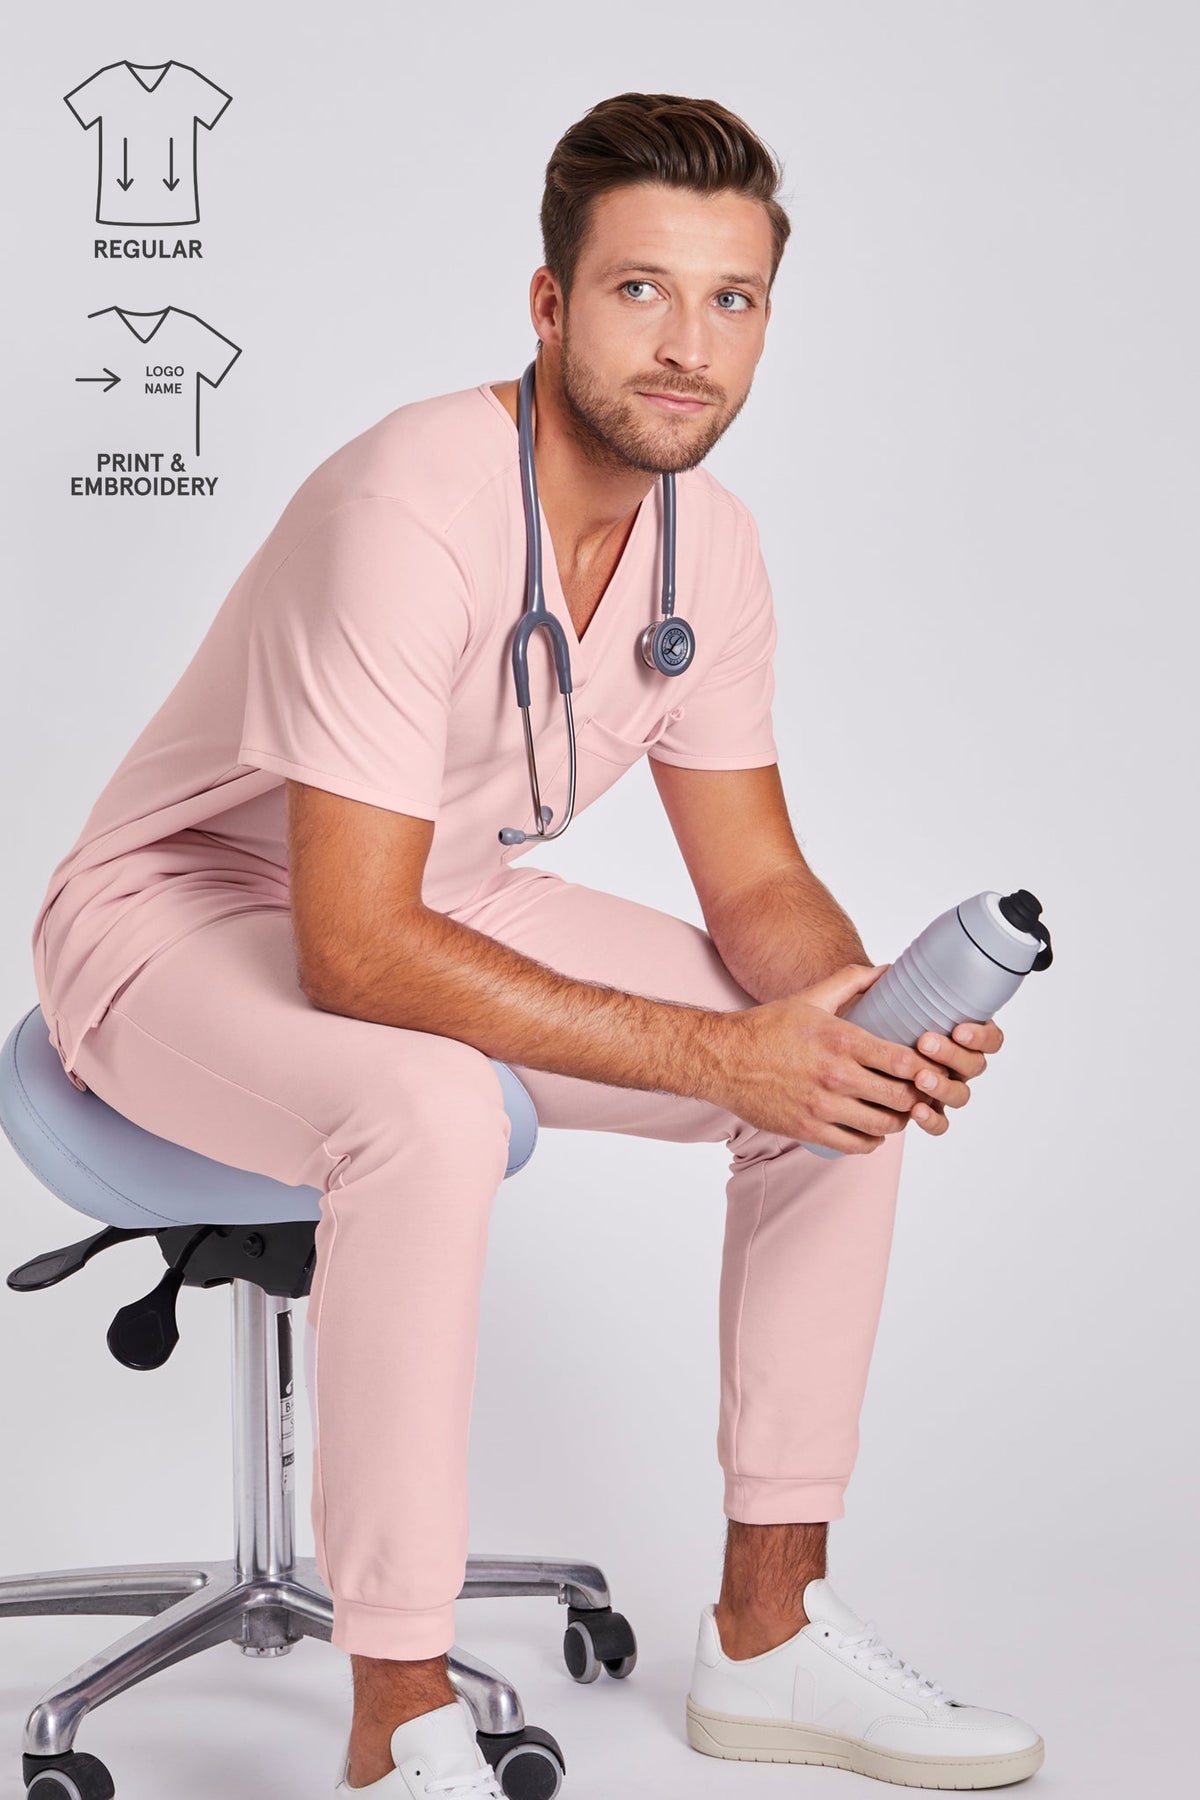 Regular Fit Scrub Top "Yves" – Pink